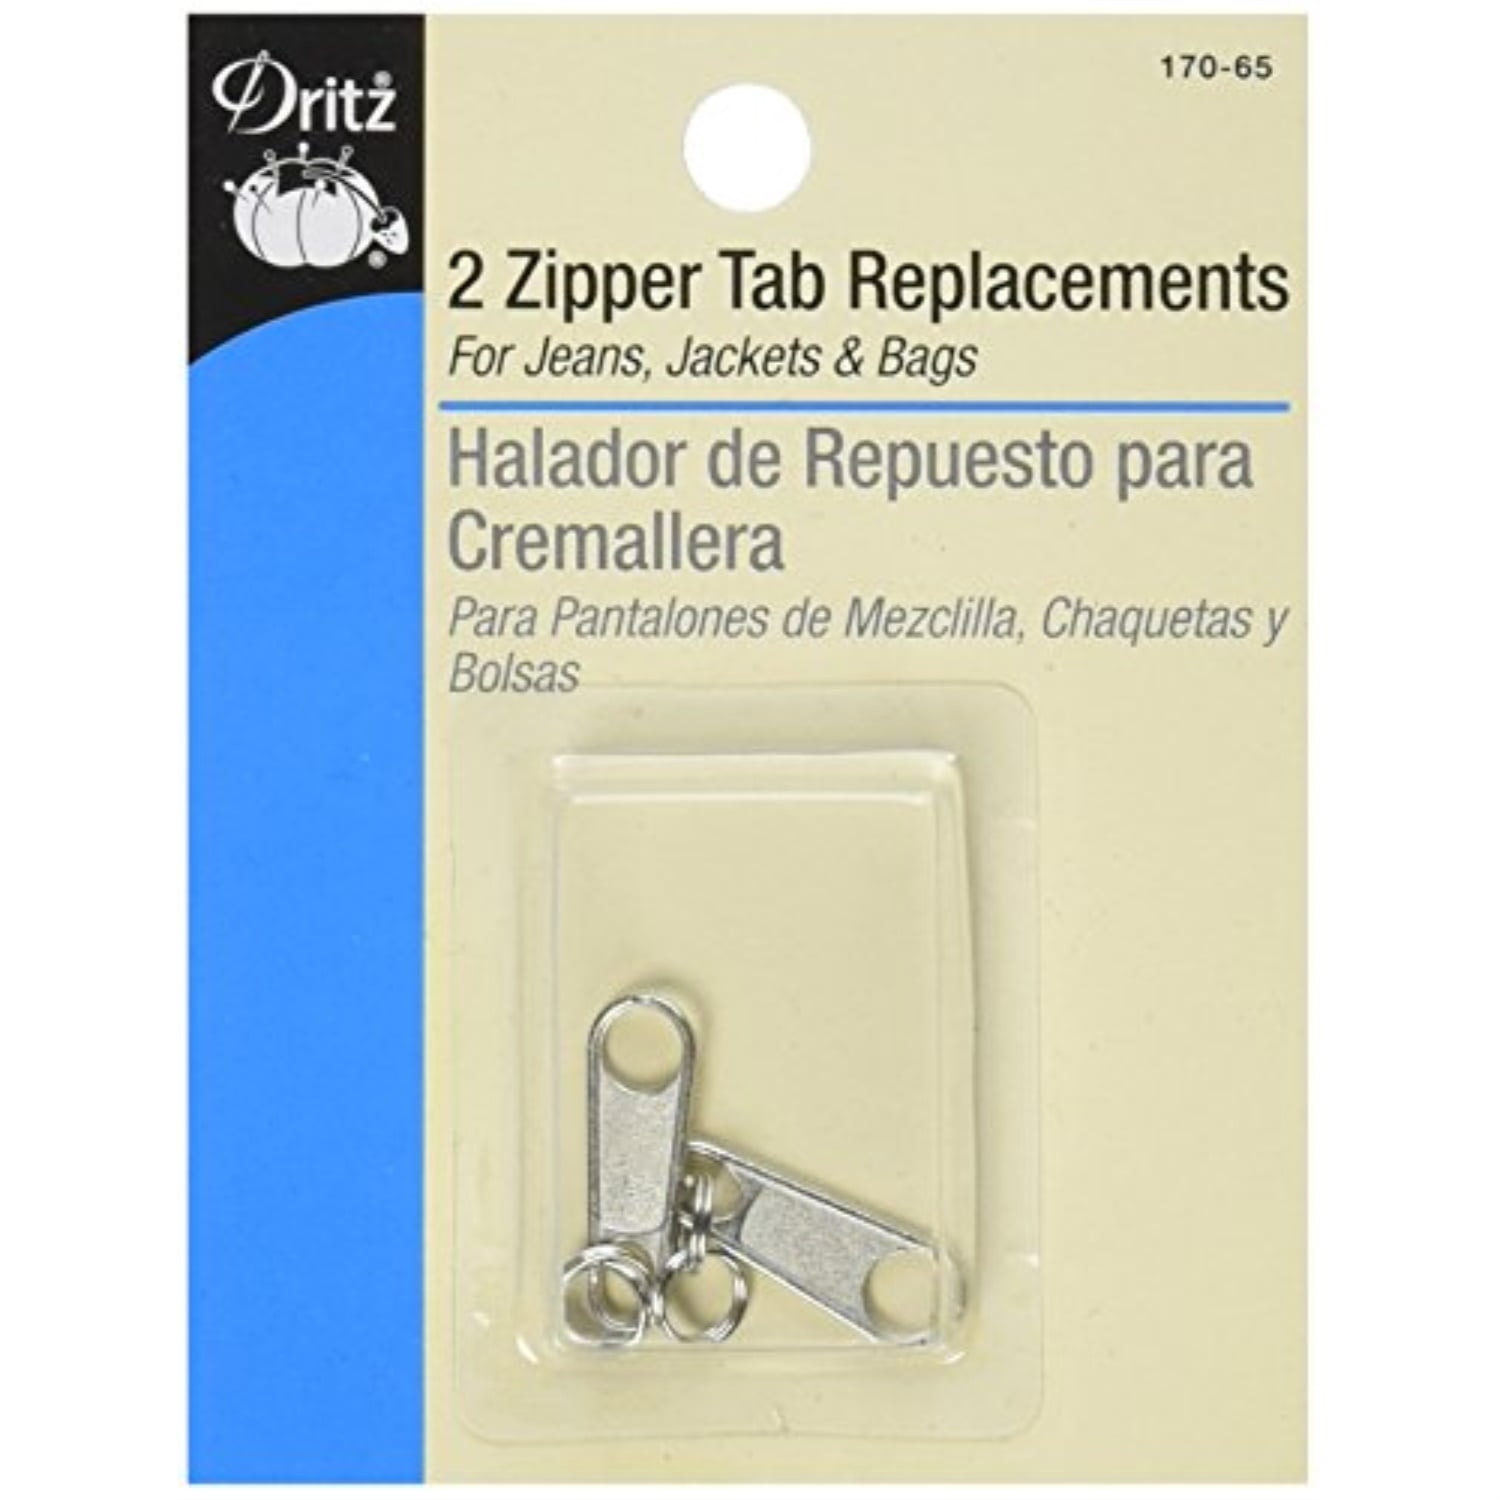 Dritz 170-65 Zipper Tab Replacements 2 Each 7/8" 